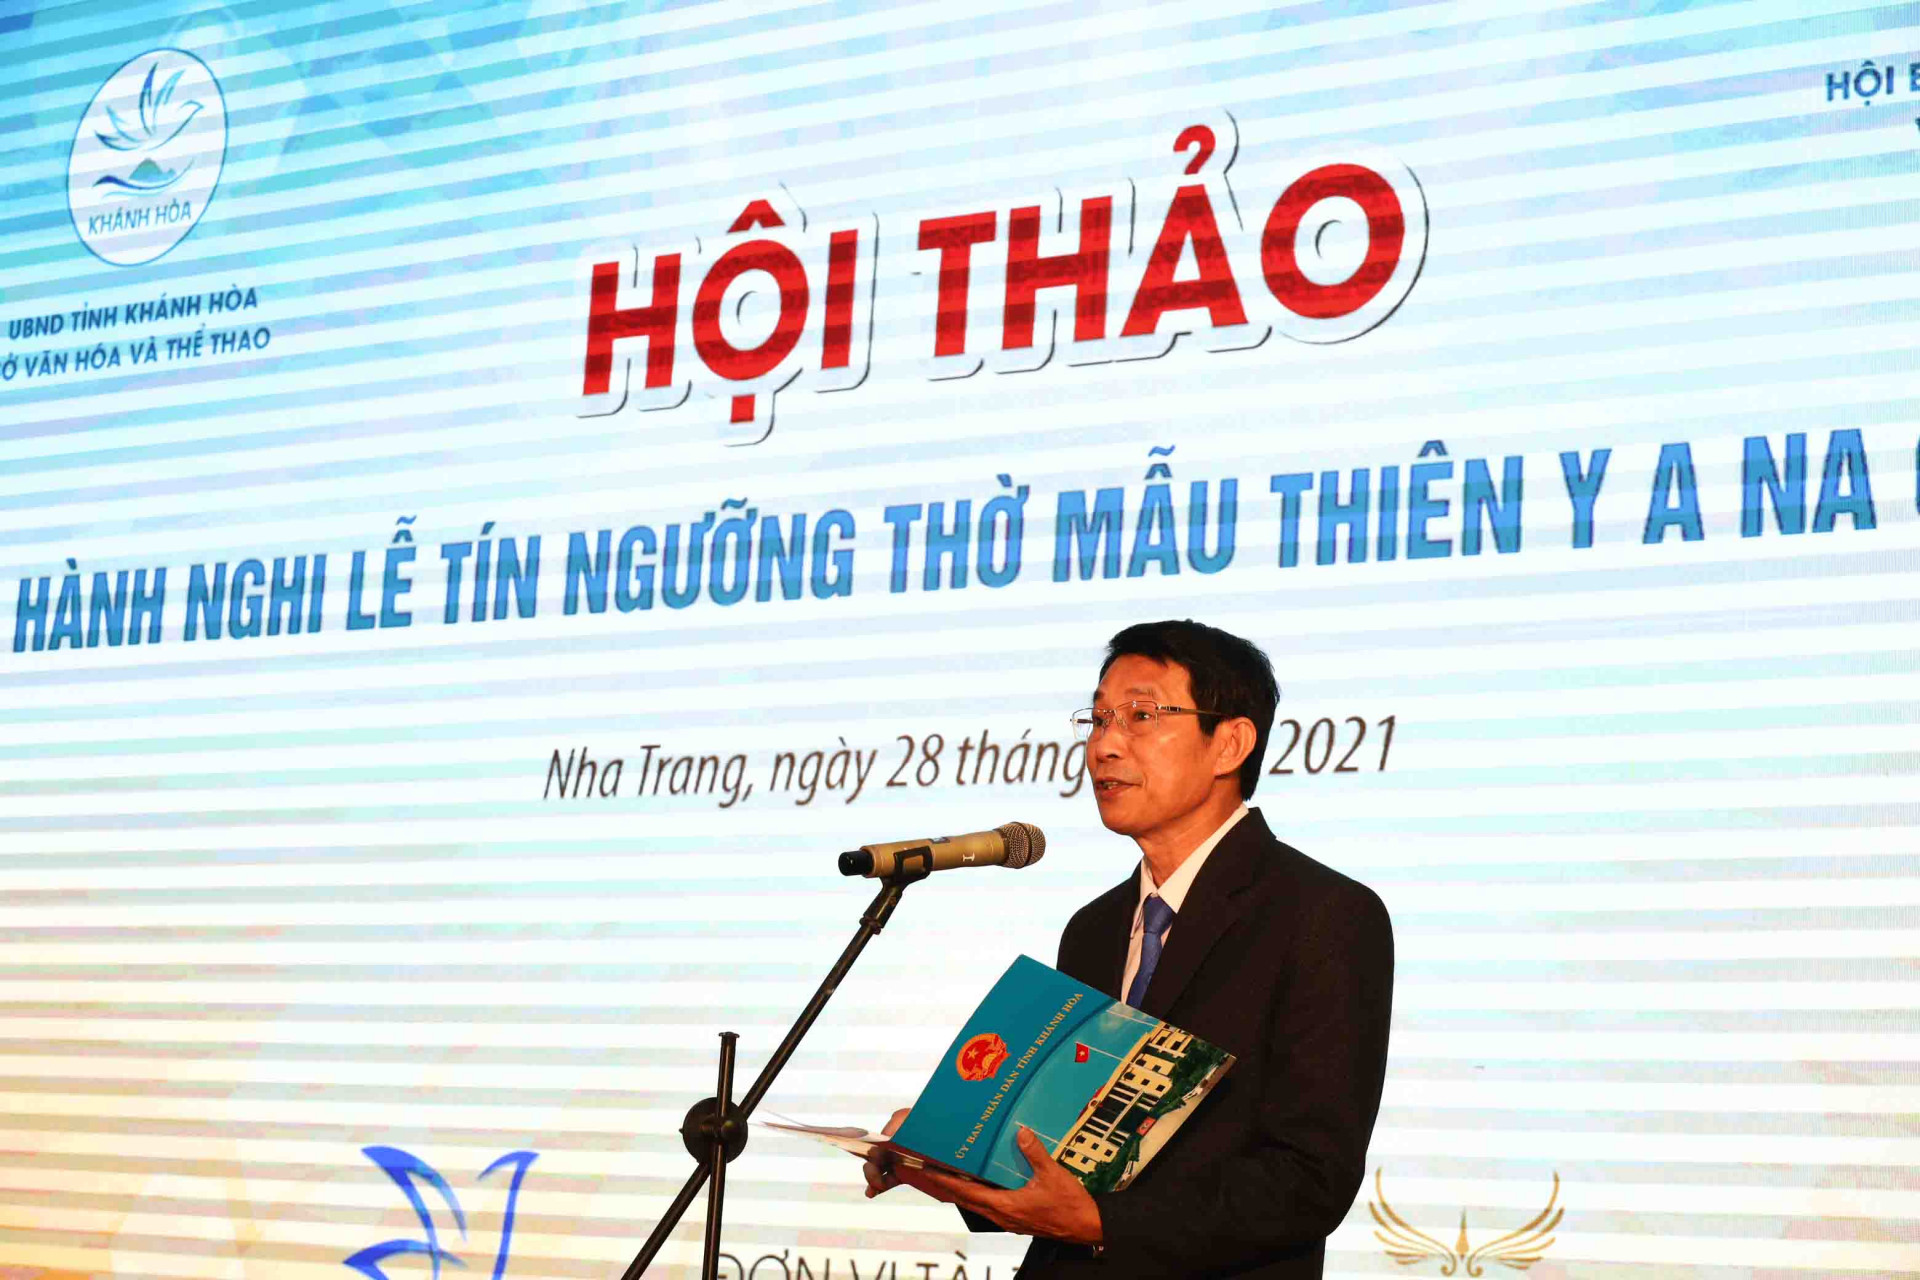 Ông Đinh Văn Thiệu phát biểu tại hội thảo.